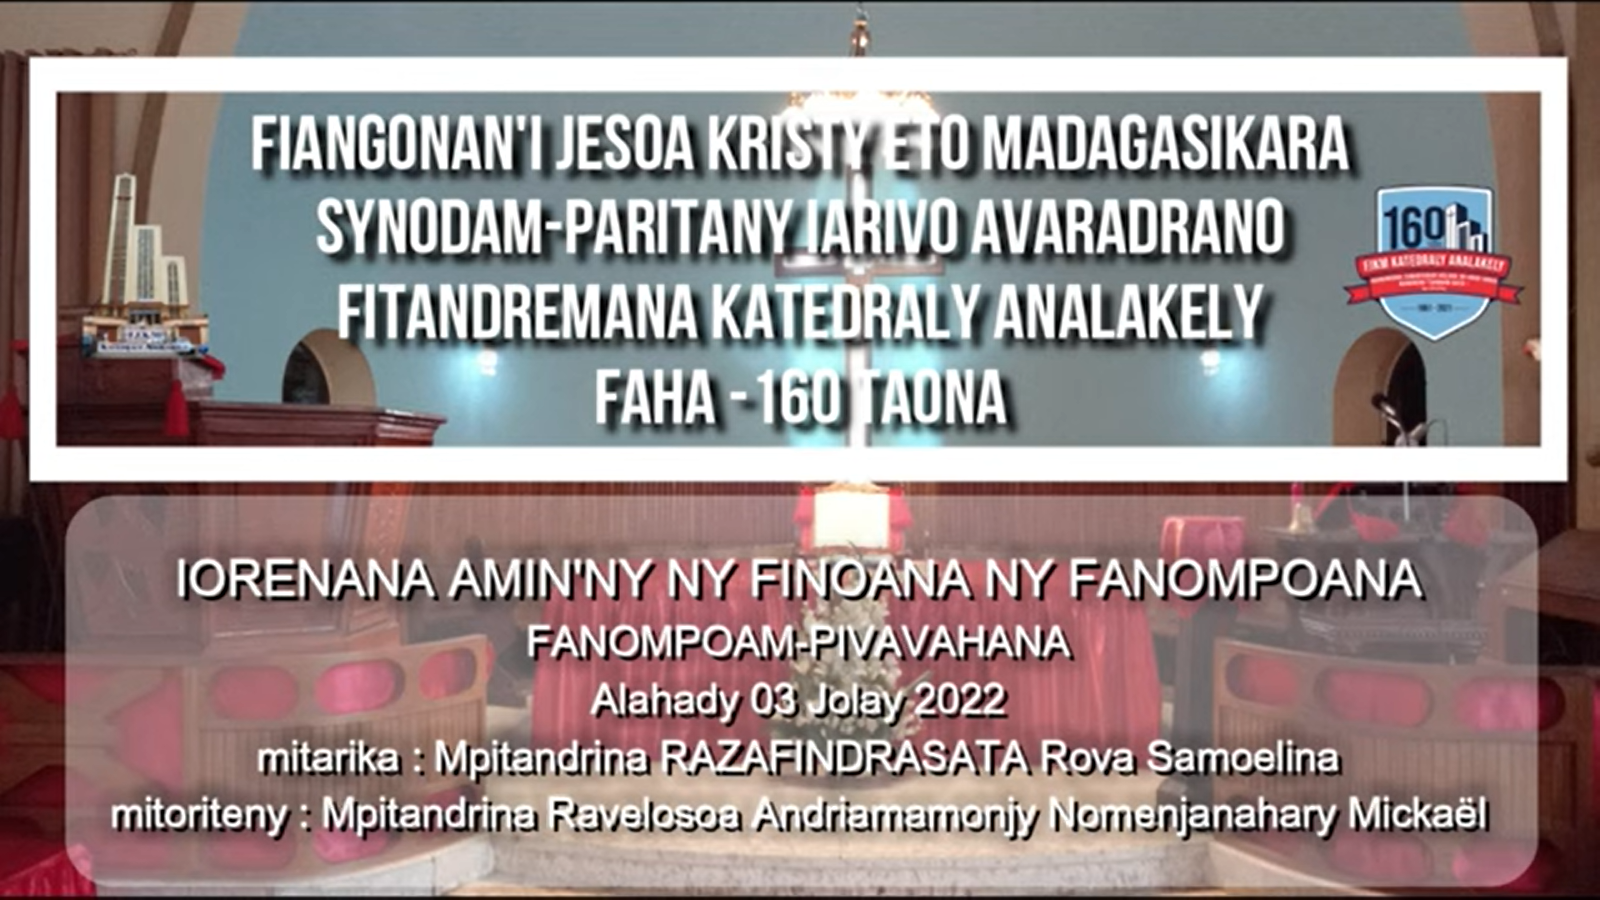 FANOMPOAM-PIVAVAHANA : ALAHADY 03 JOLAY 2022